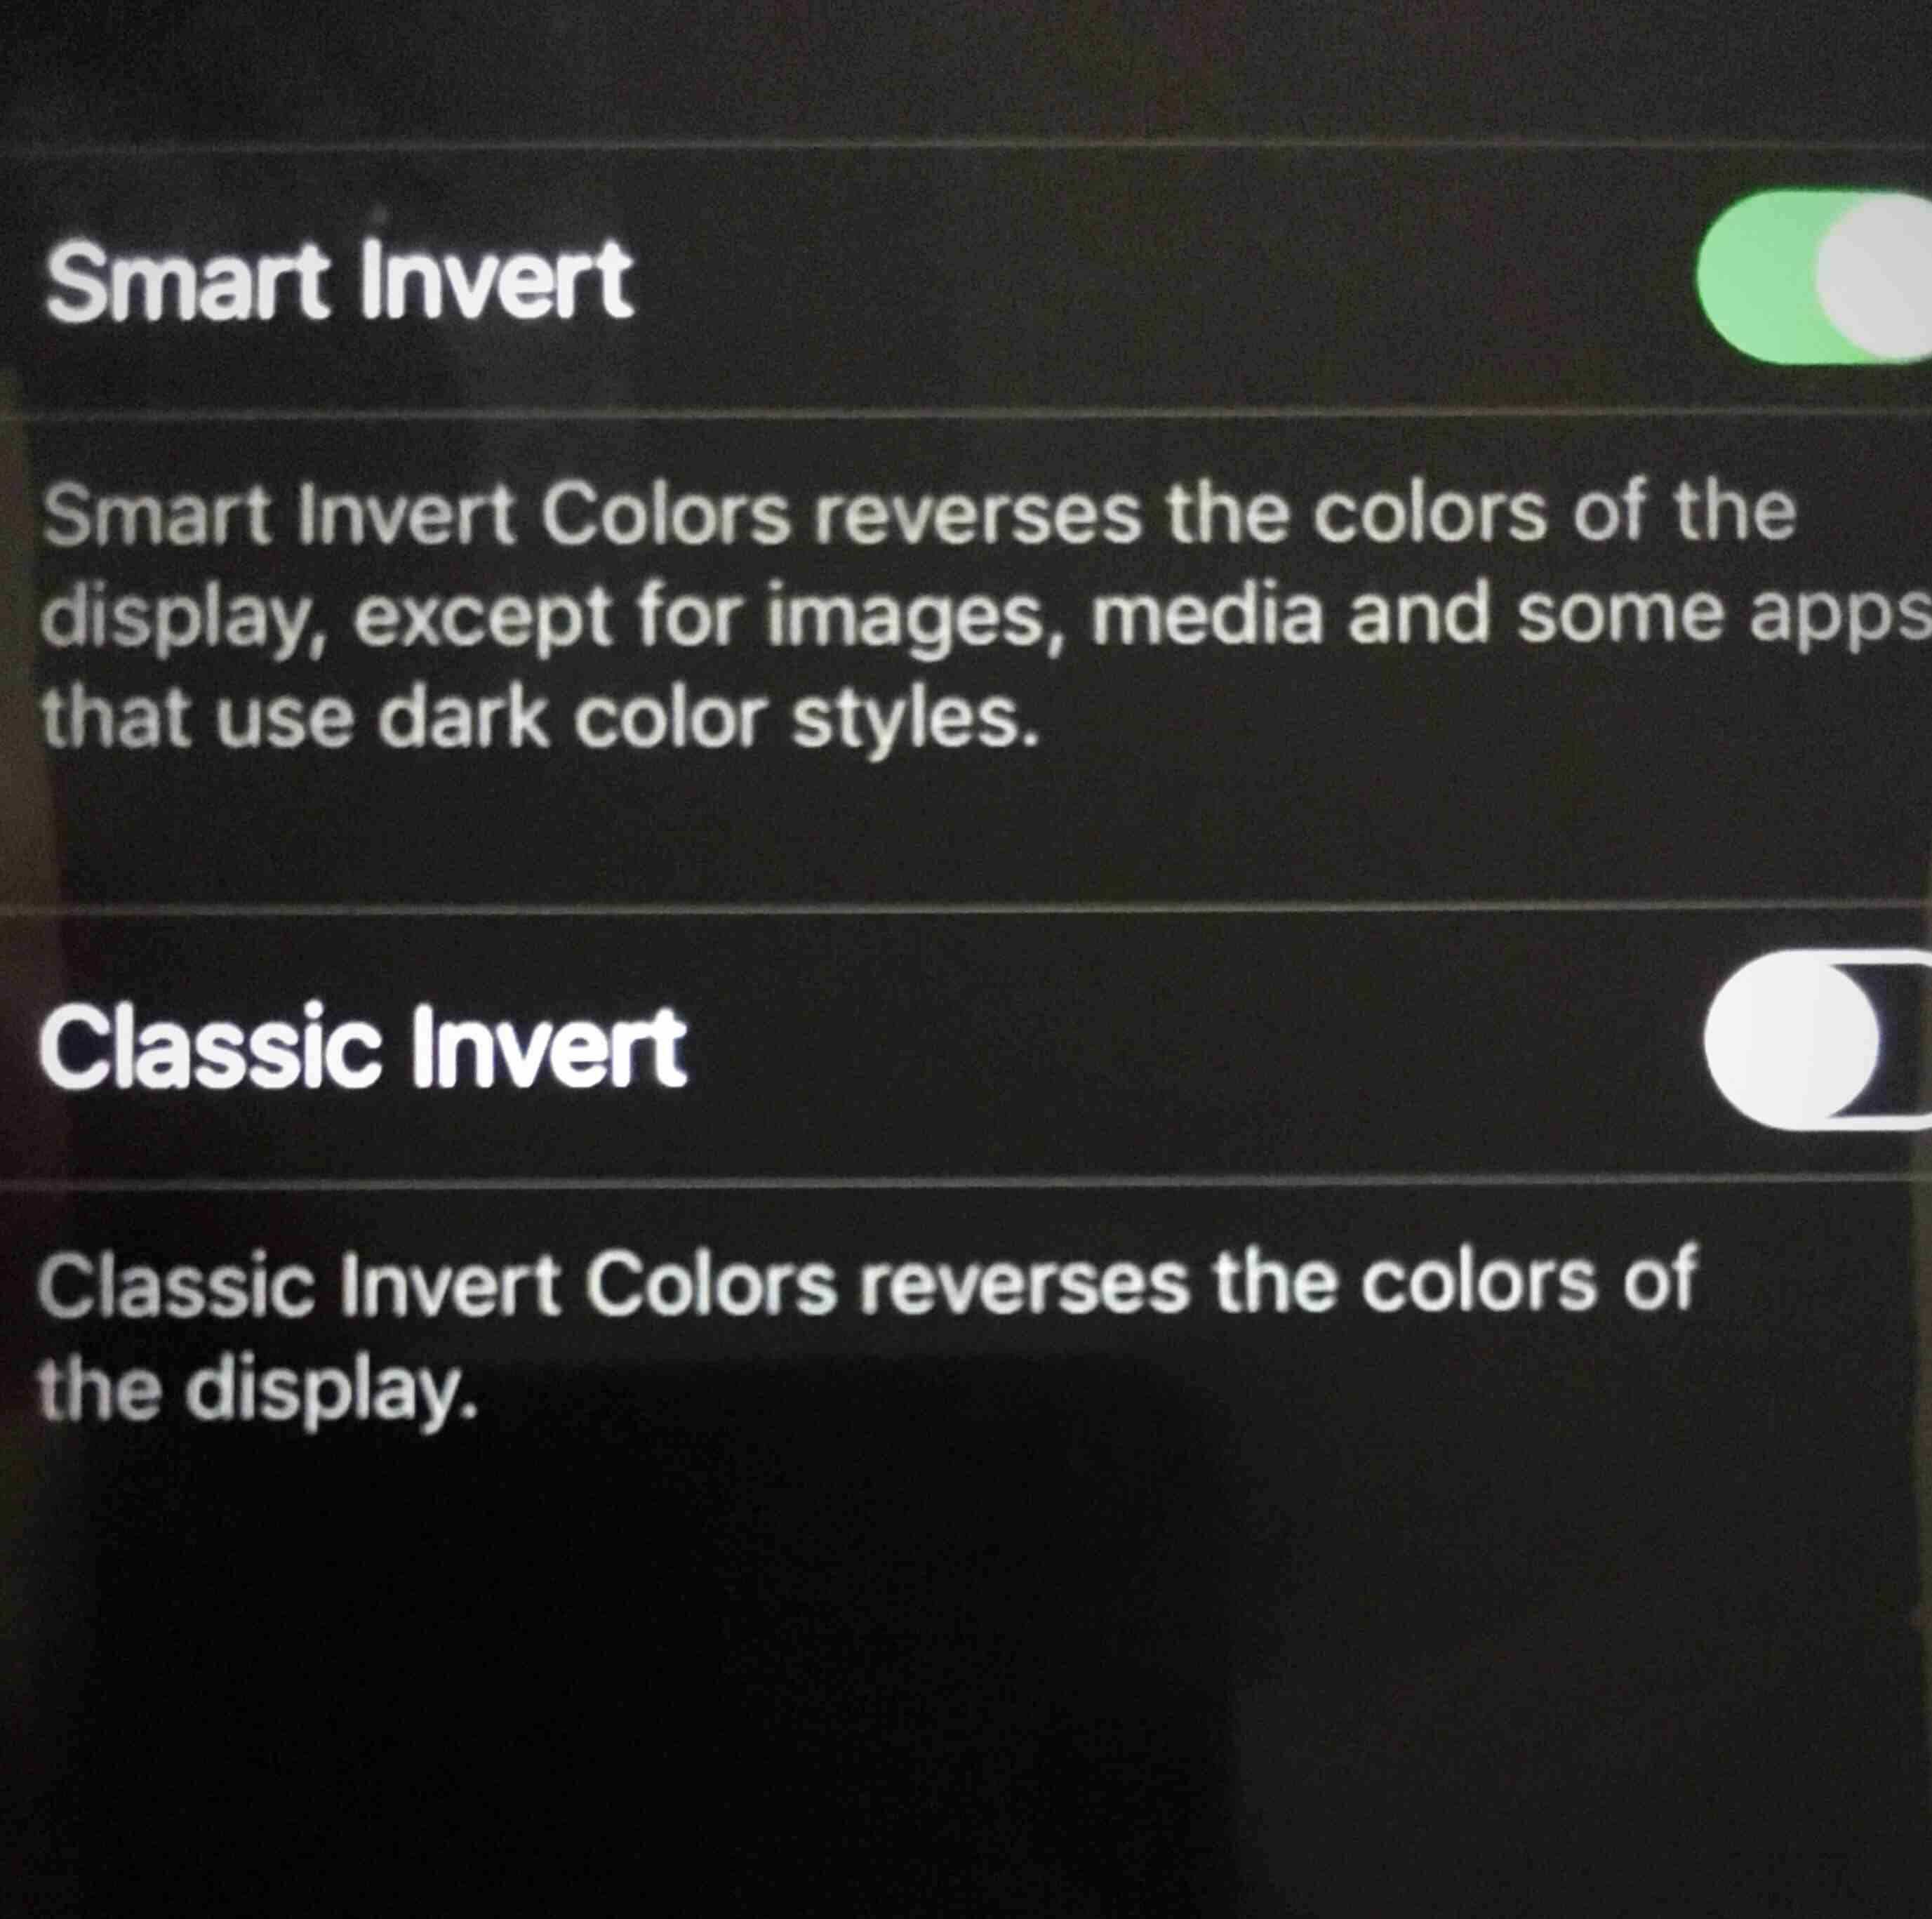 Снимок экрана: отображение параметров размещения инвертированных цветов с включенной функцией Smart Invert